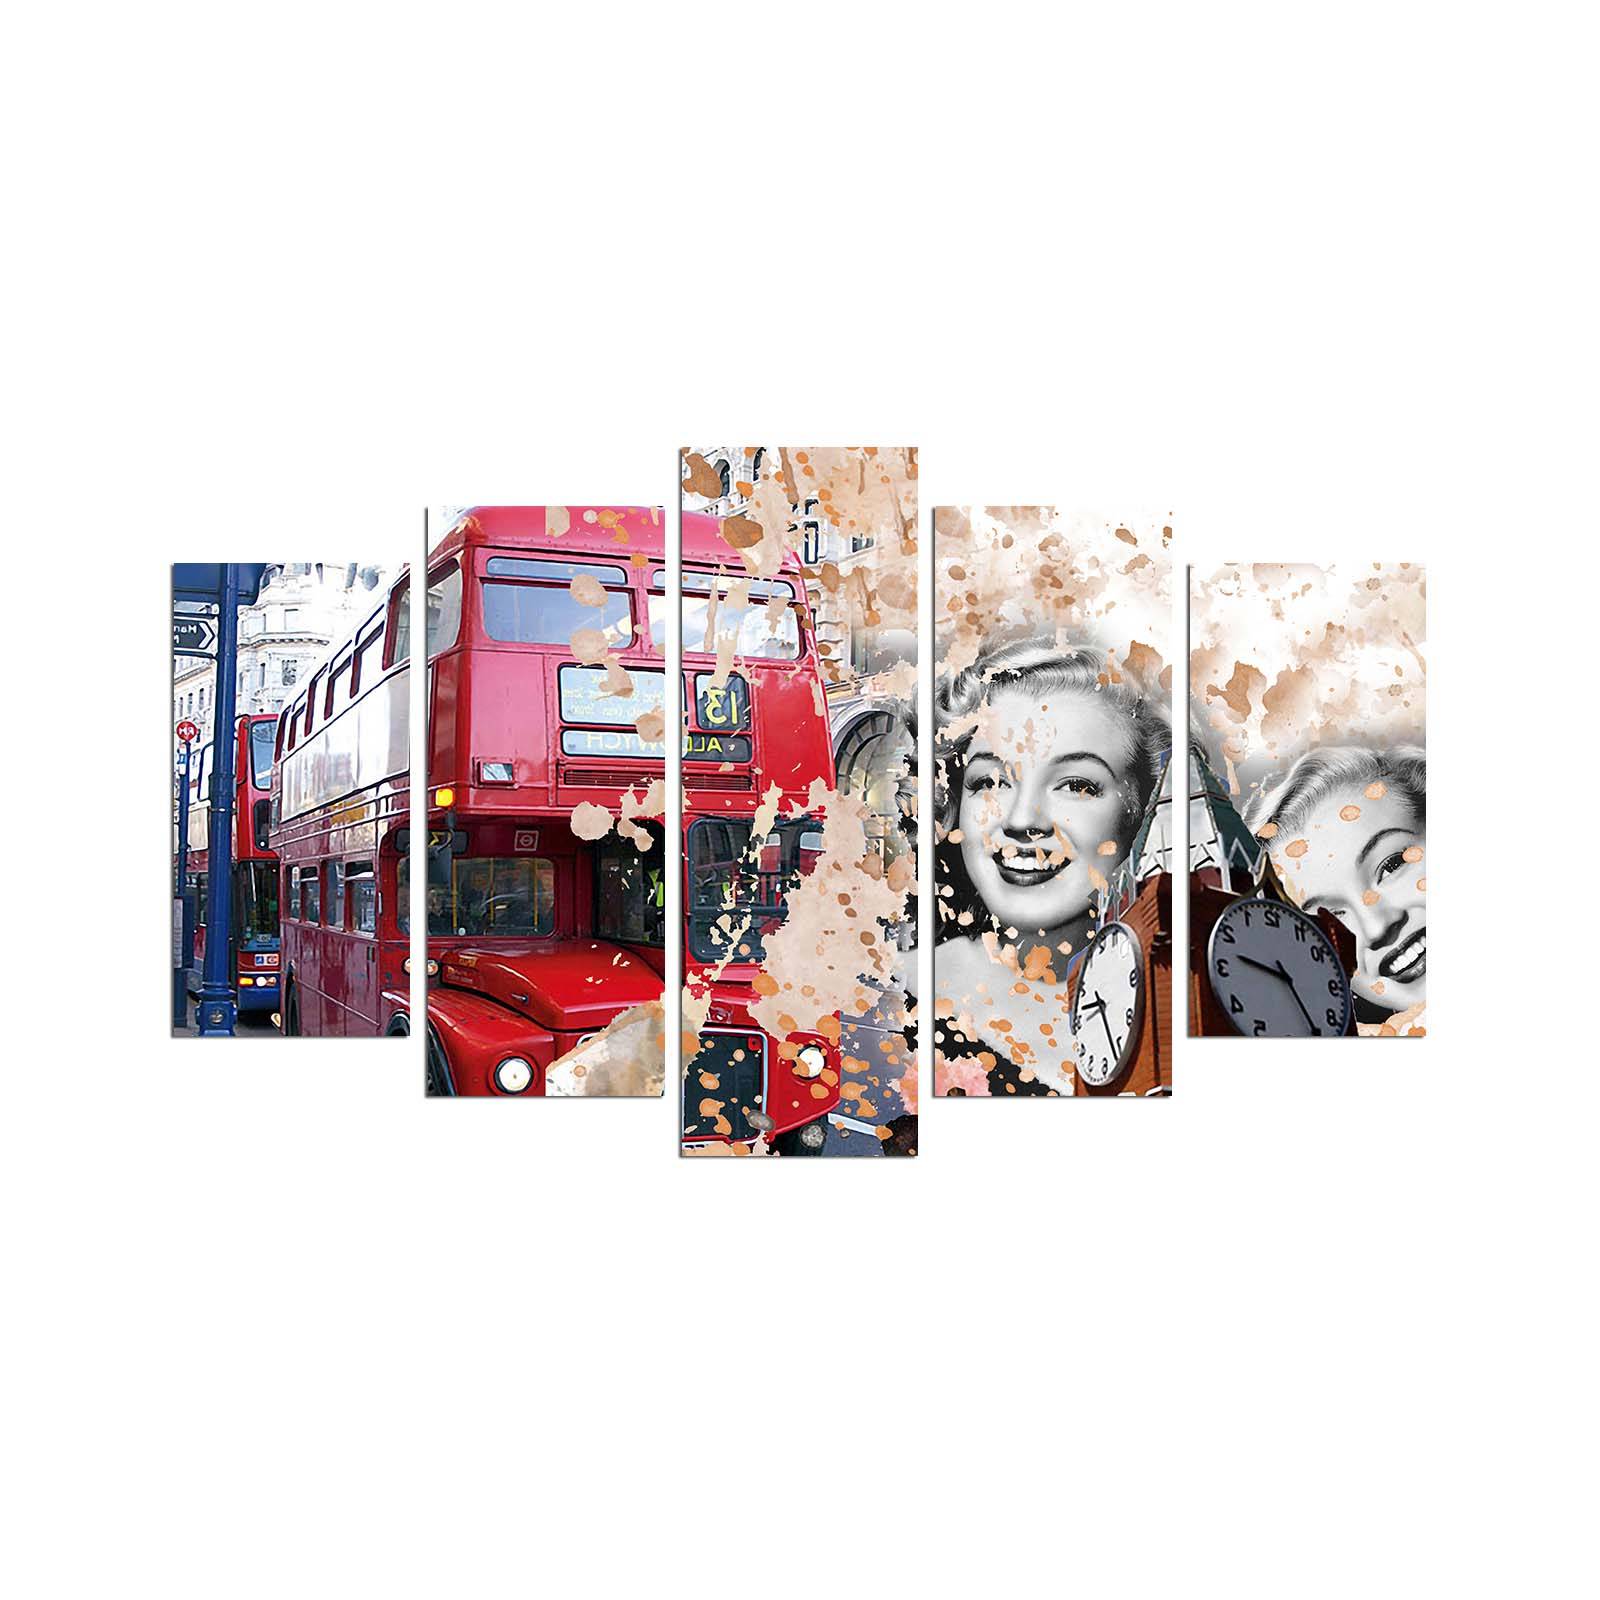 Grex London Bus und Marilyne Monroe Rot und Beige Pentaptychon